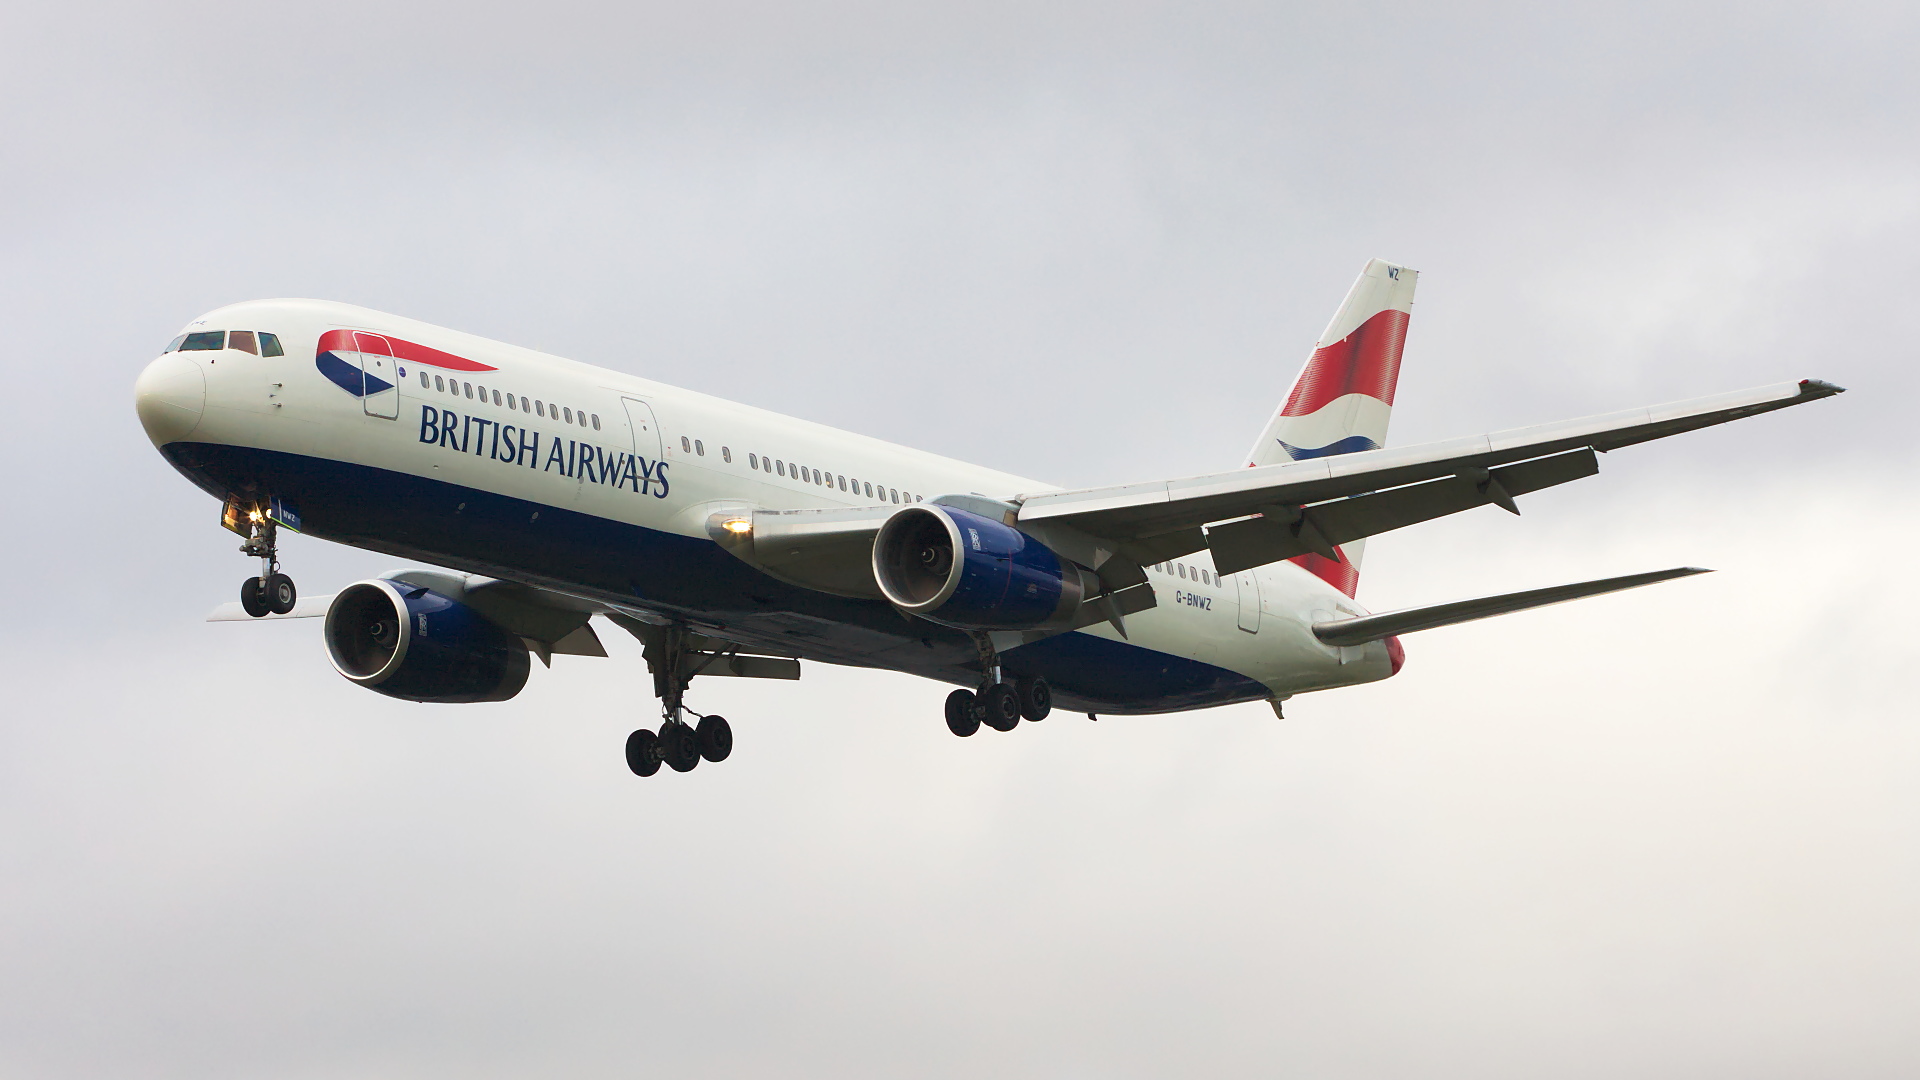 G-BNWZ ✈ British Airways Boeing 767-336ER @ London-Heathrow